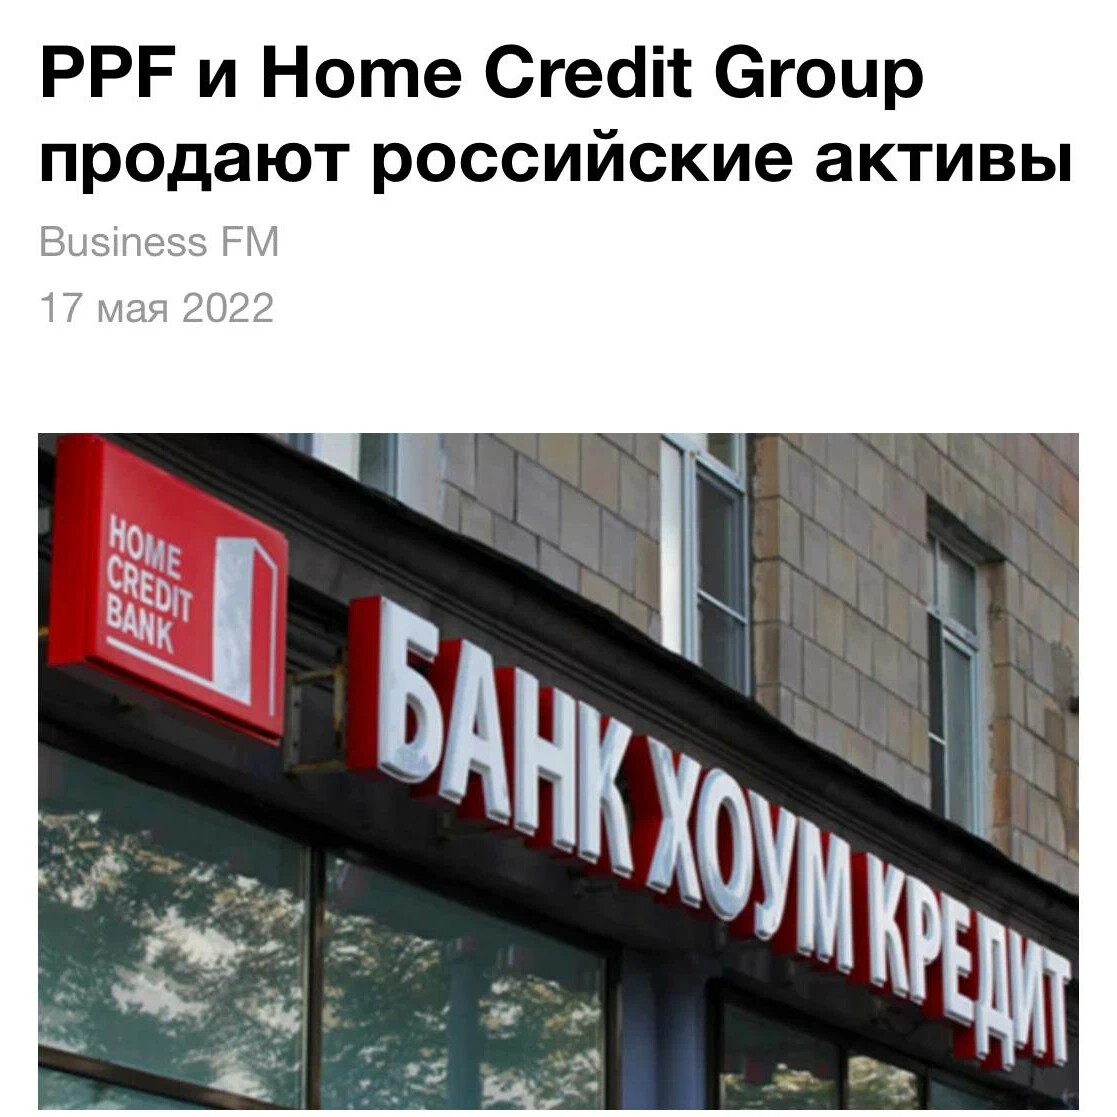 Независимый кредитный банк. Home credit Bank Гарик Варламов Свобода.